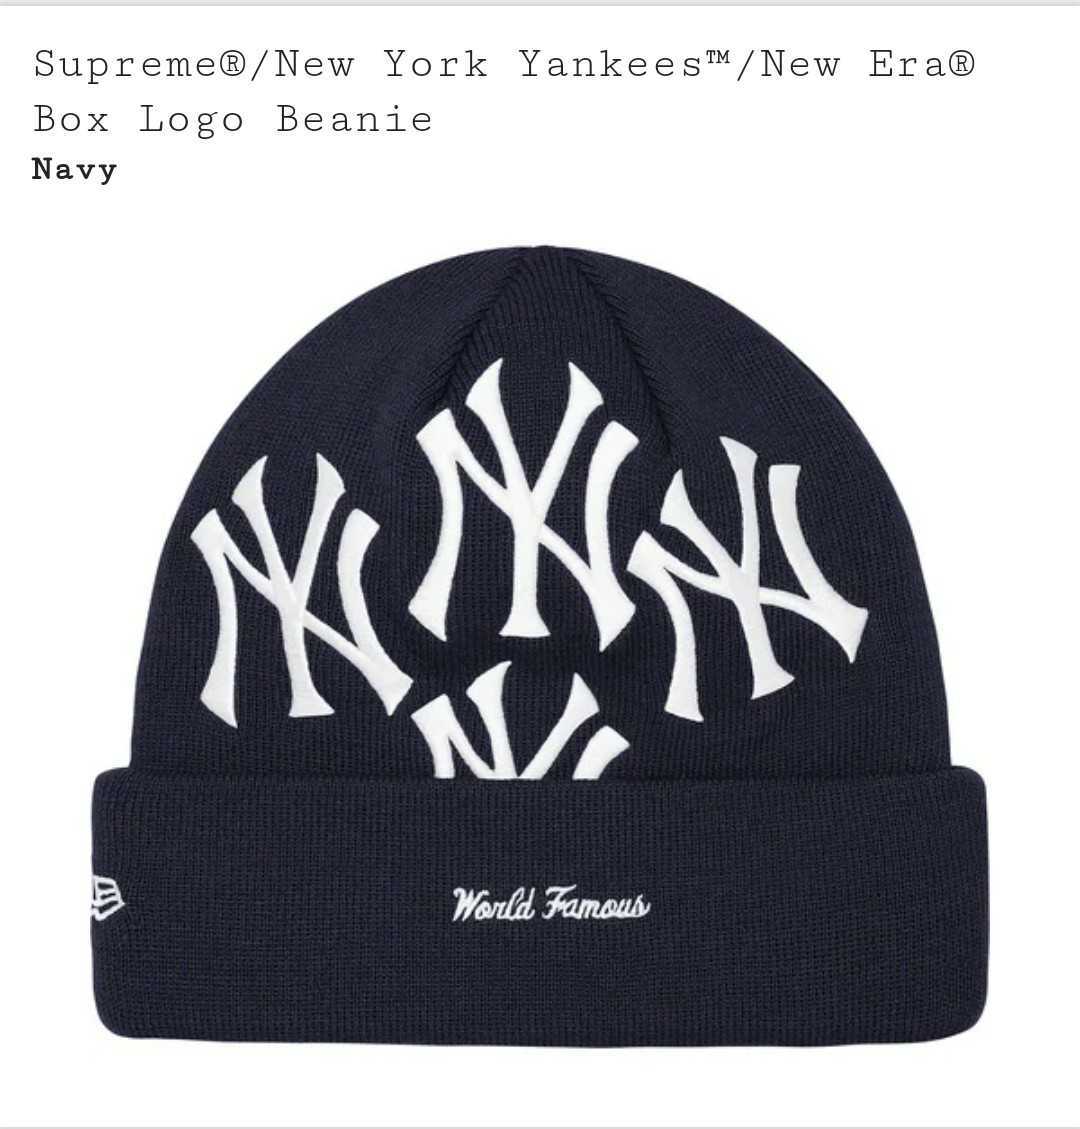 39％割引最高の品質の 即決 送料無料 Supreme シュプリーム 21AW New York Yankees ヤンキース New Era  ニューエラ Box Logo Beanie ボックスロゴ ビーニー 新品 その他帽子 メンズファッション  ファッション-WWW.FIRSTMEDIA.SWISS